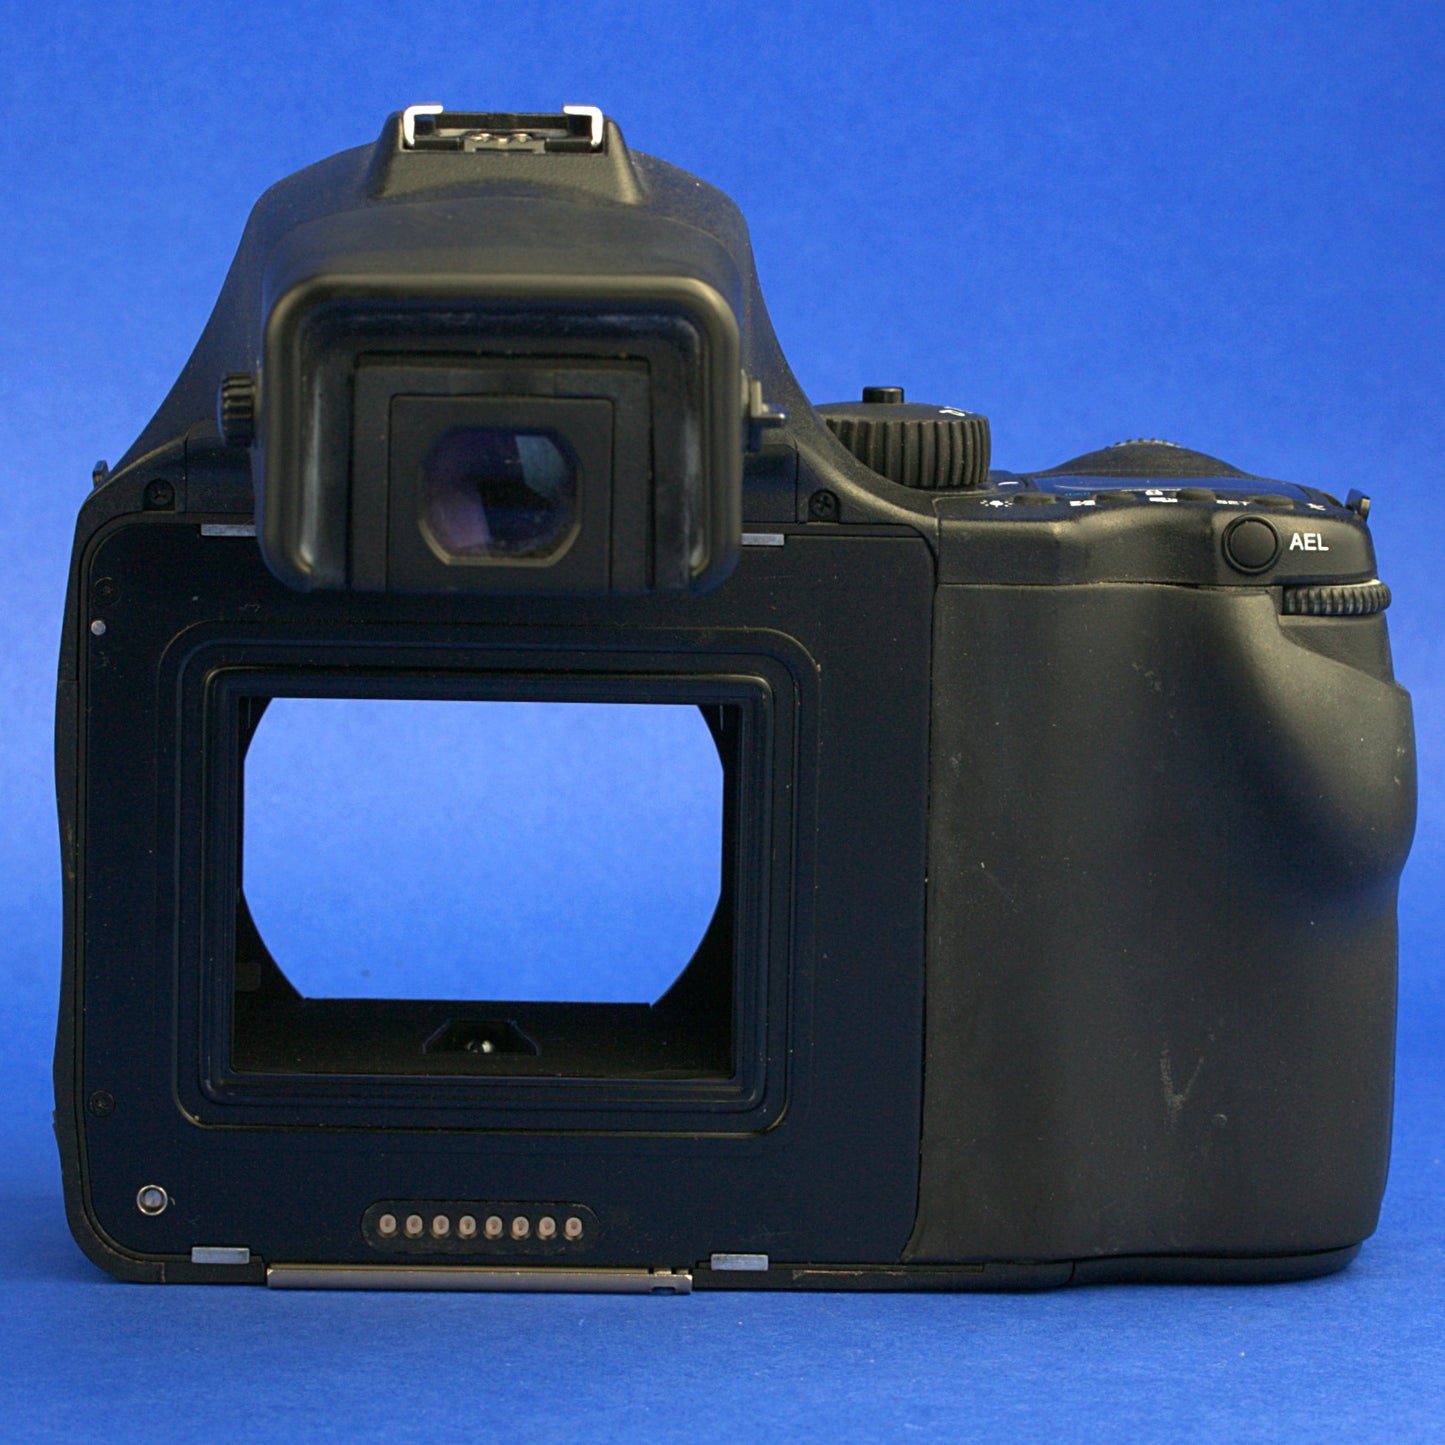 Phase One 645 AF Medium Format Camera Kit